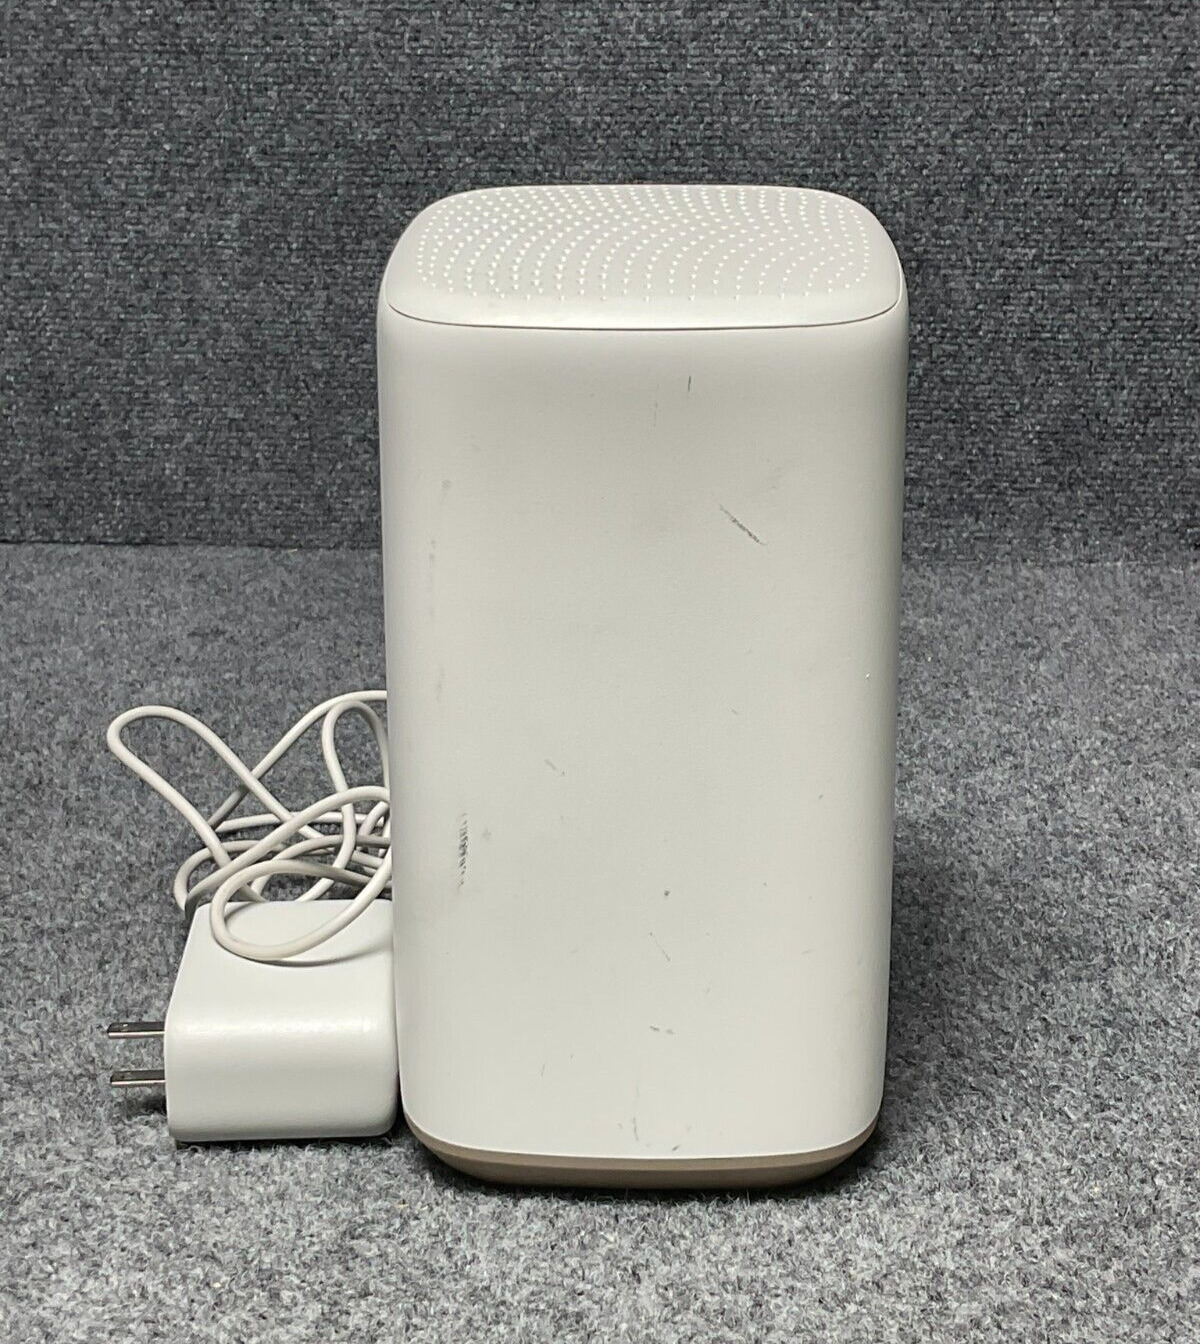 Xfinity XB8-T XFi Gateway Modem Wifi Router With Power Cord In White